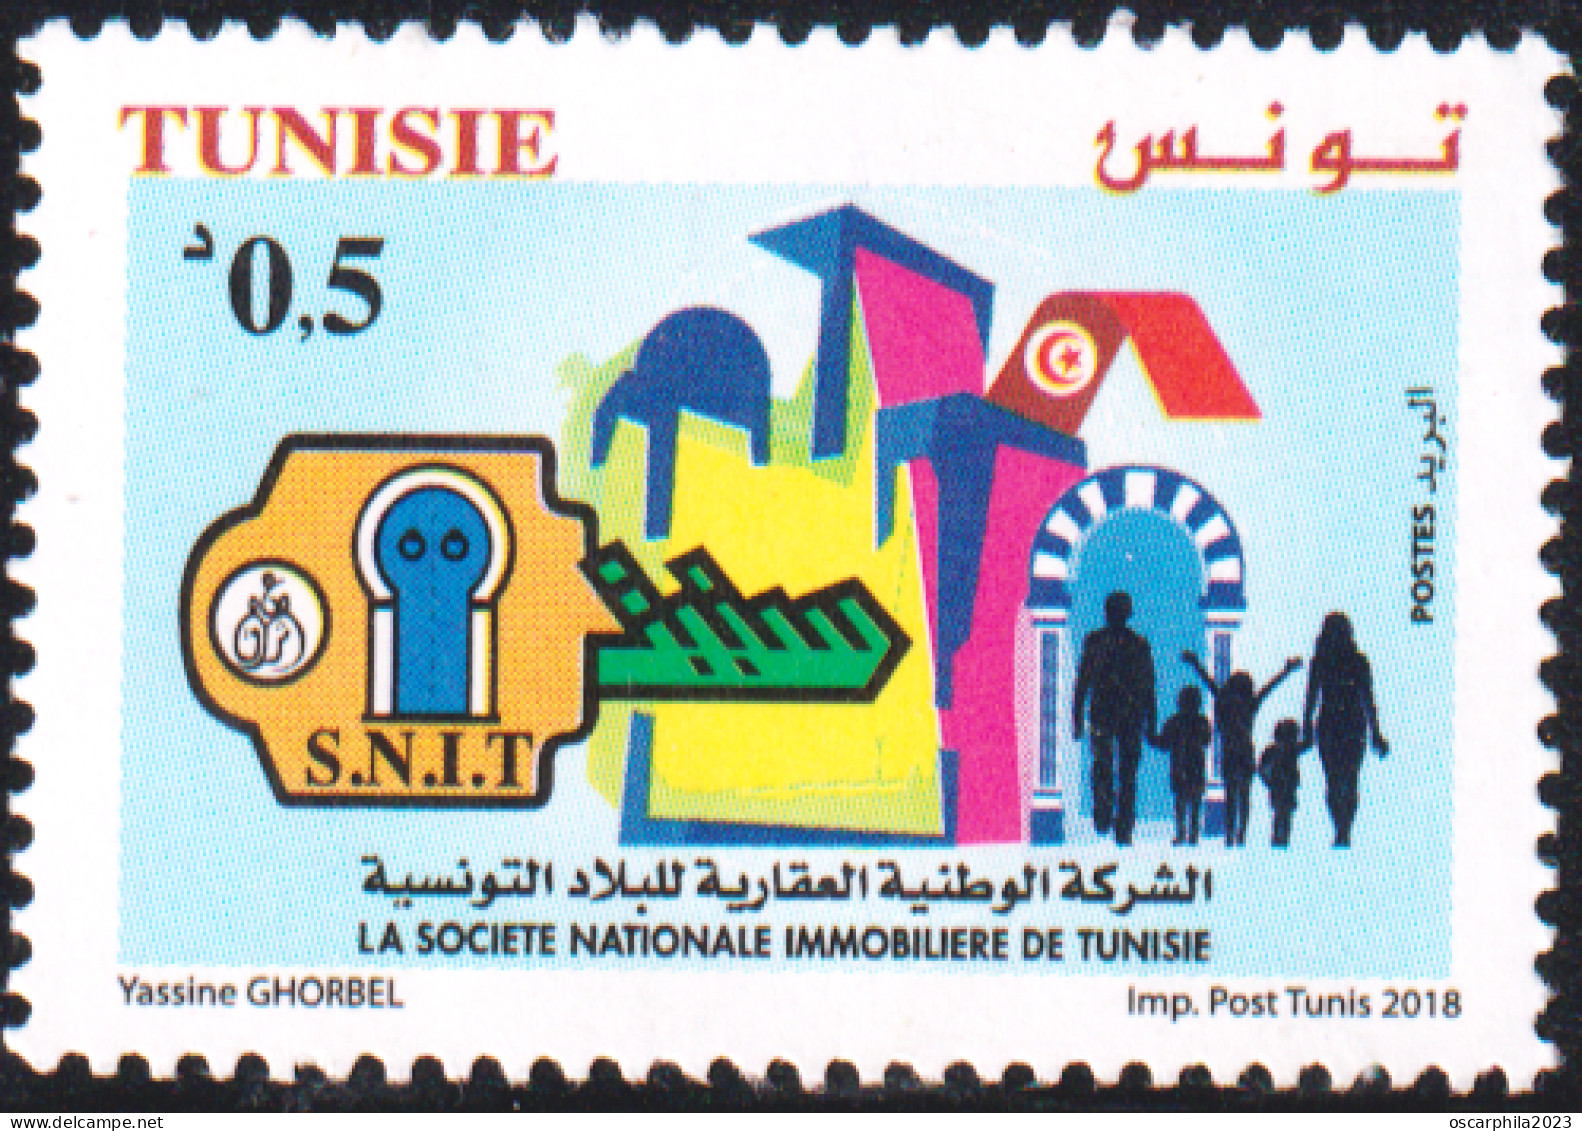 2018 -Tunisie-Société Nationale Immobilière De Tunisie “SNIT” Le Droit à Un Logement Décent- 1V -MNH***** - Tunisie (1956-...)